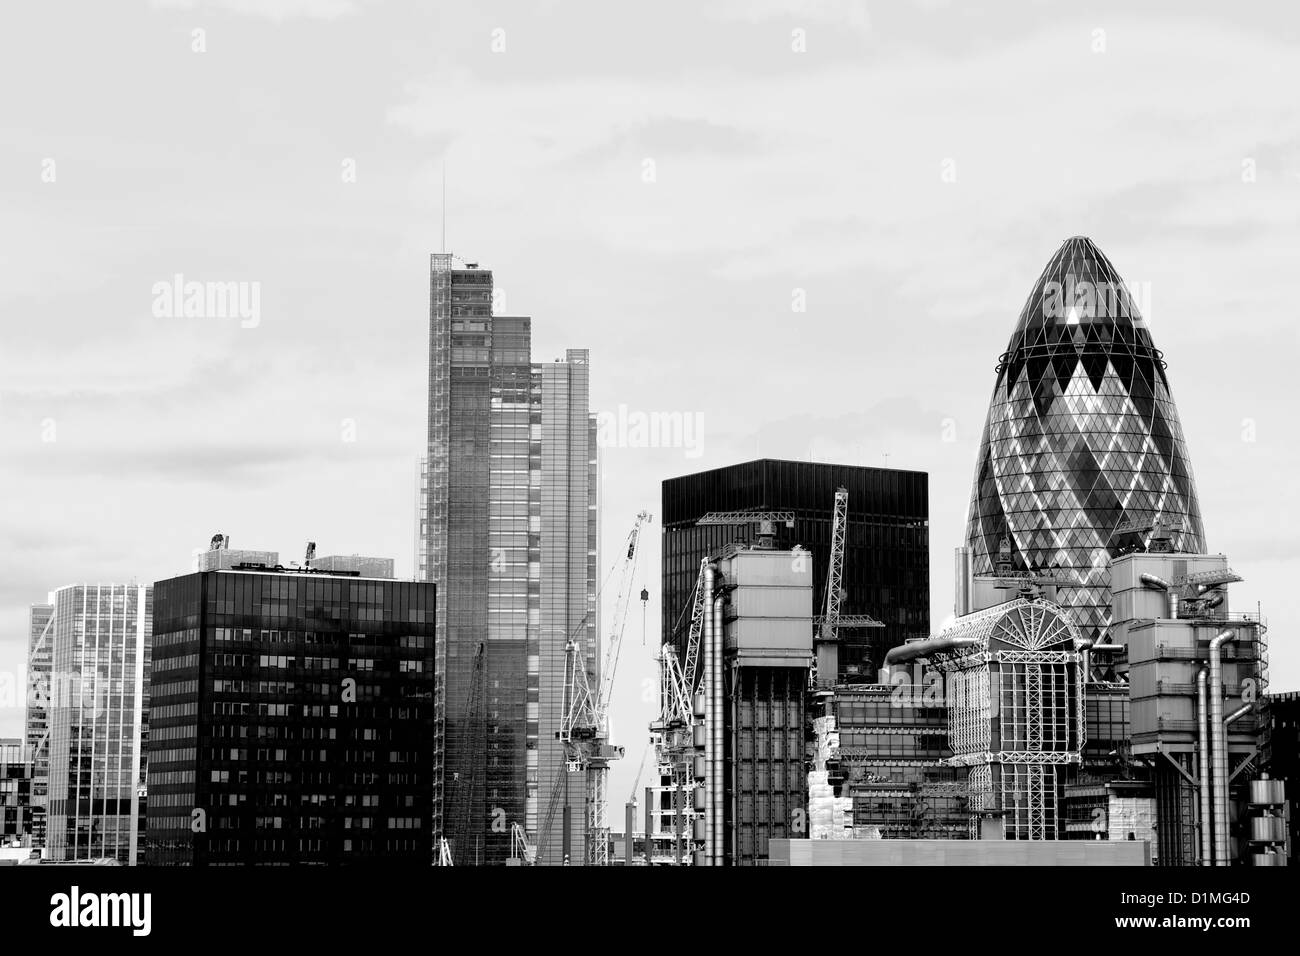 La ville de Londres ou financial district skyline, Londres, UK Banque D'Images